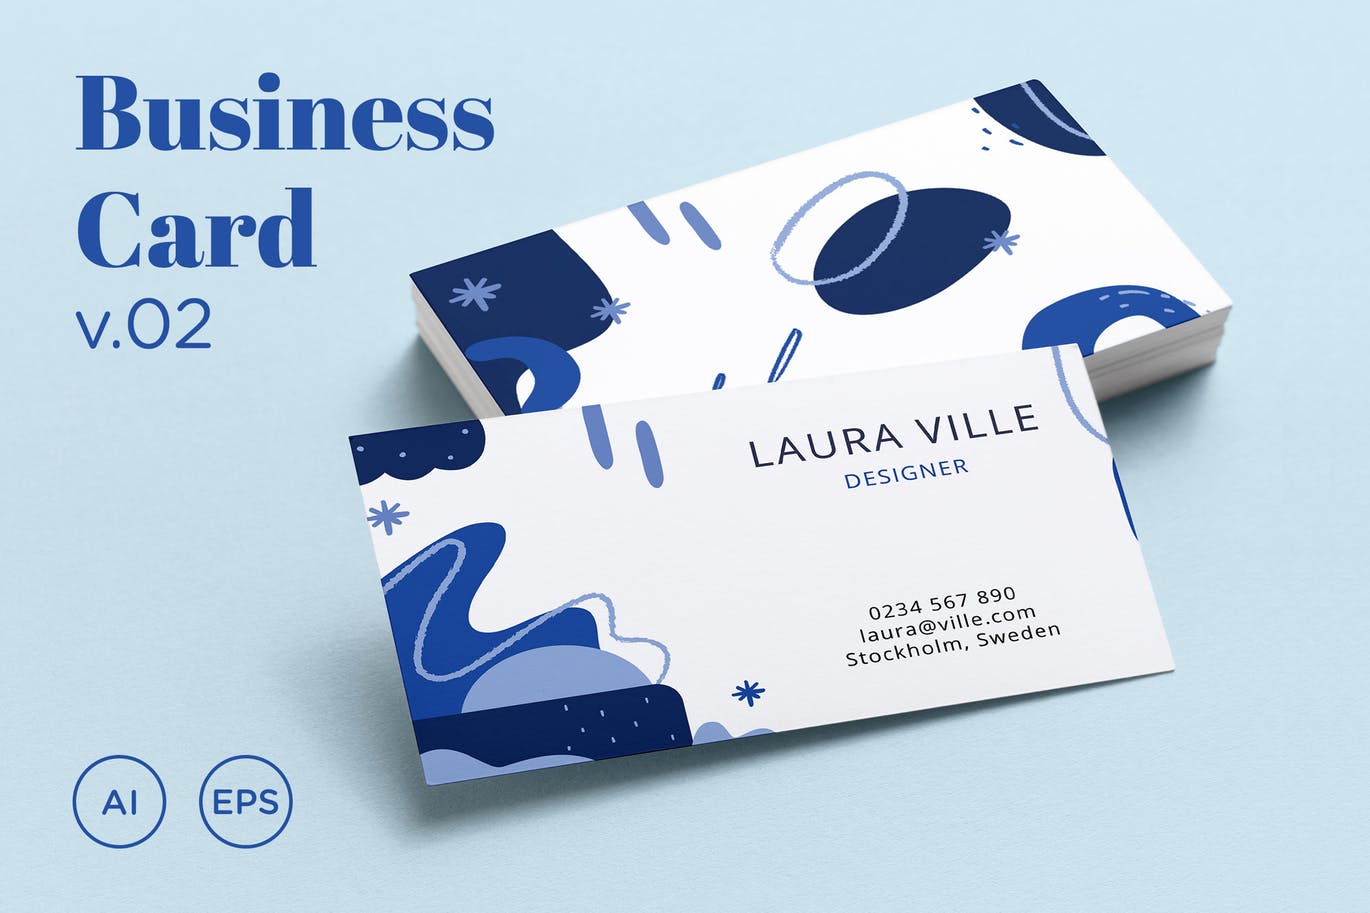 抽象孟菲斯风格蓝色名片模板v02 Business Card v.02插图